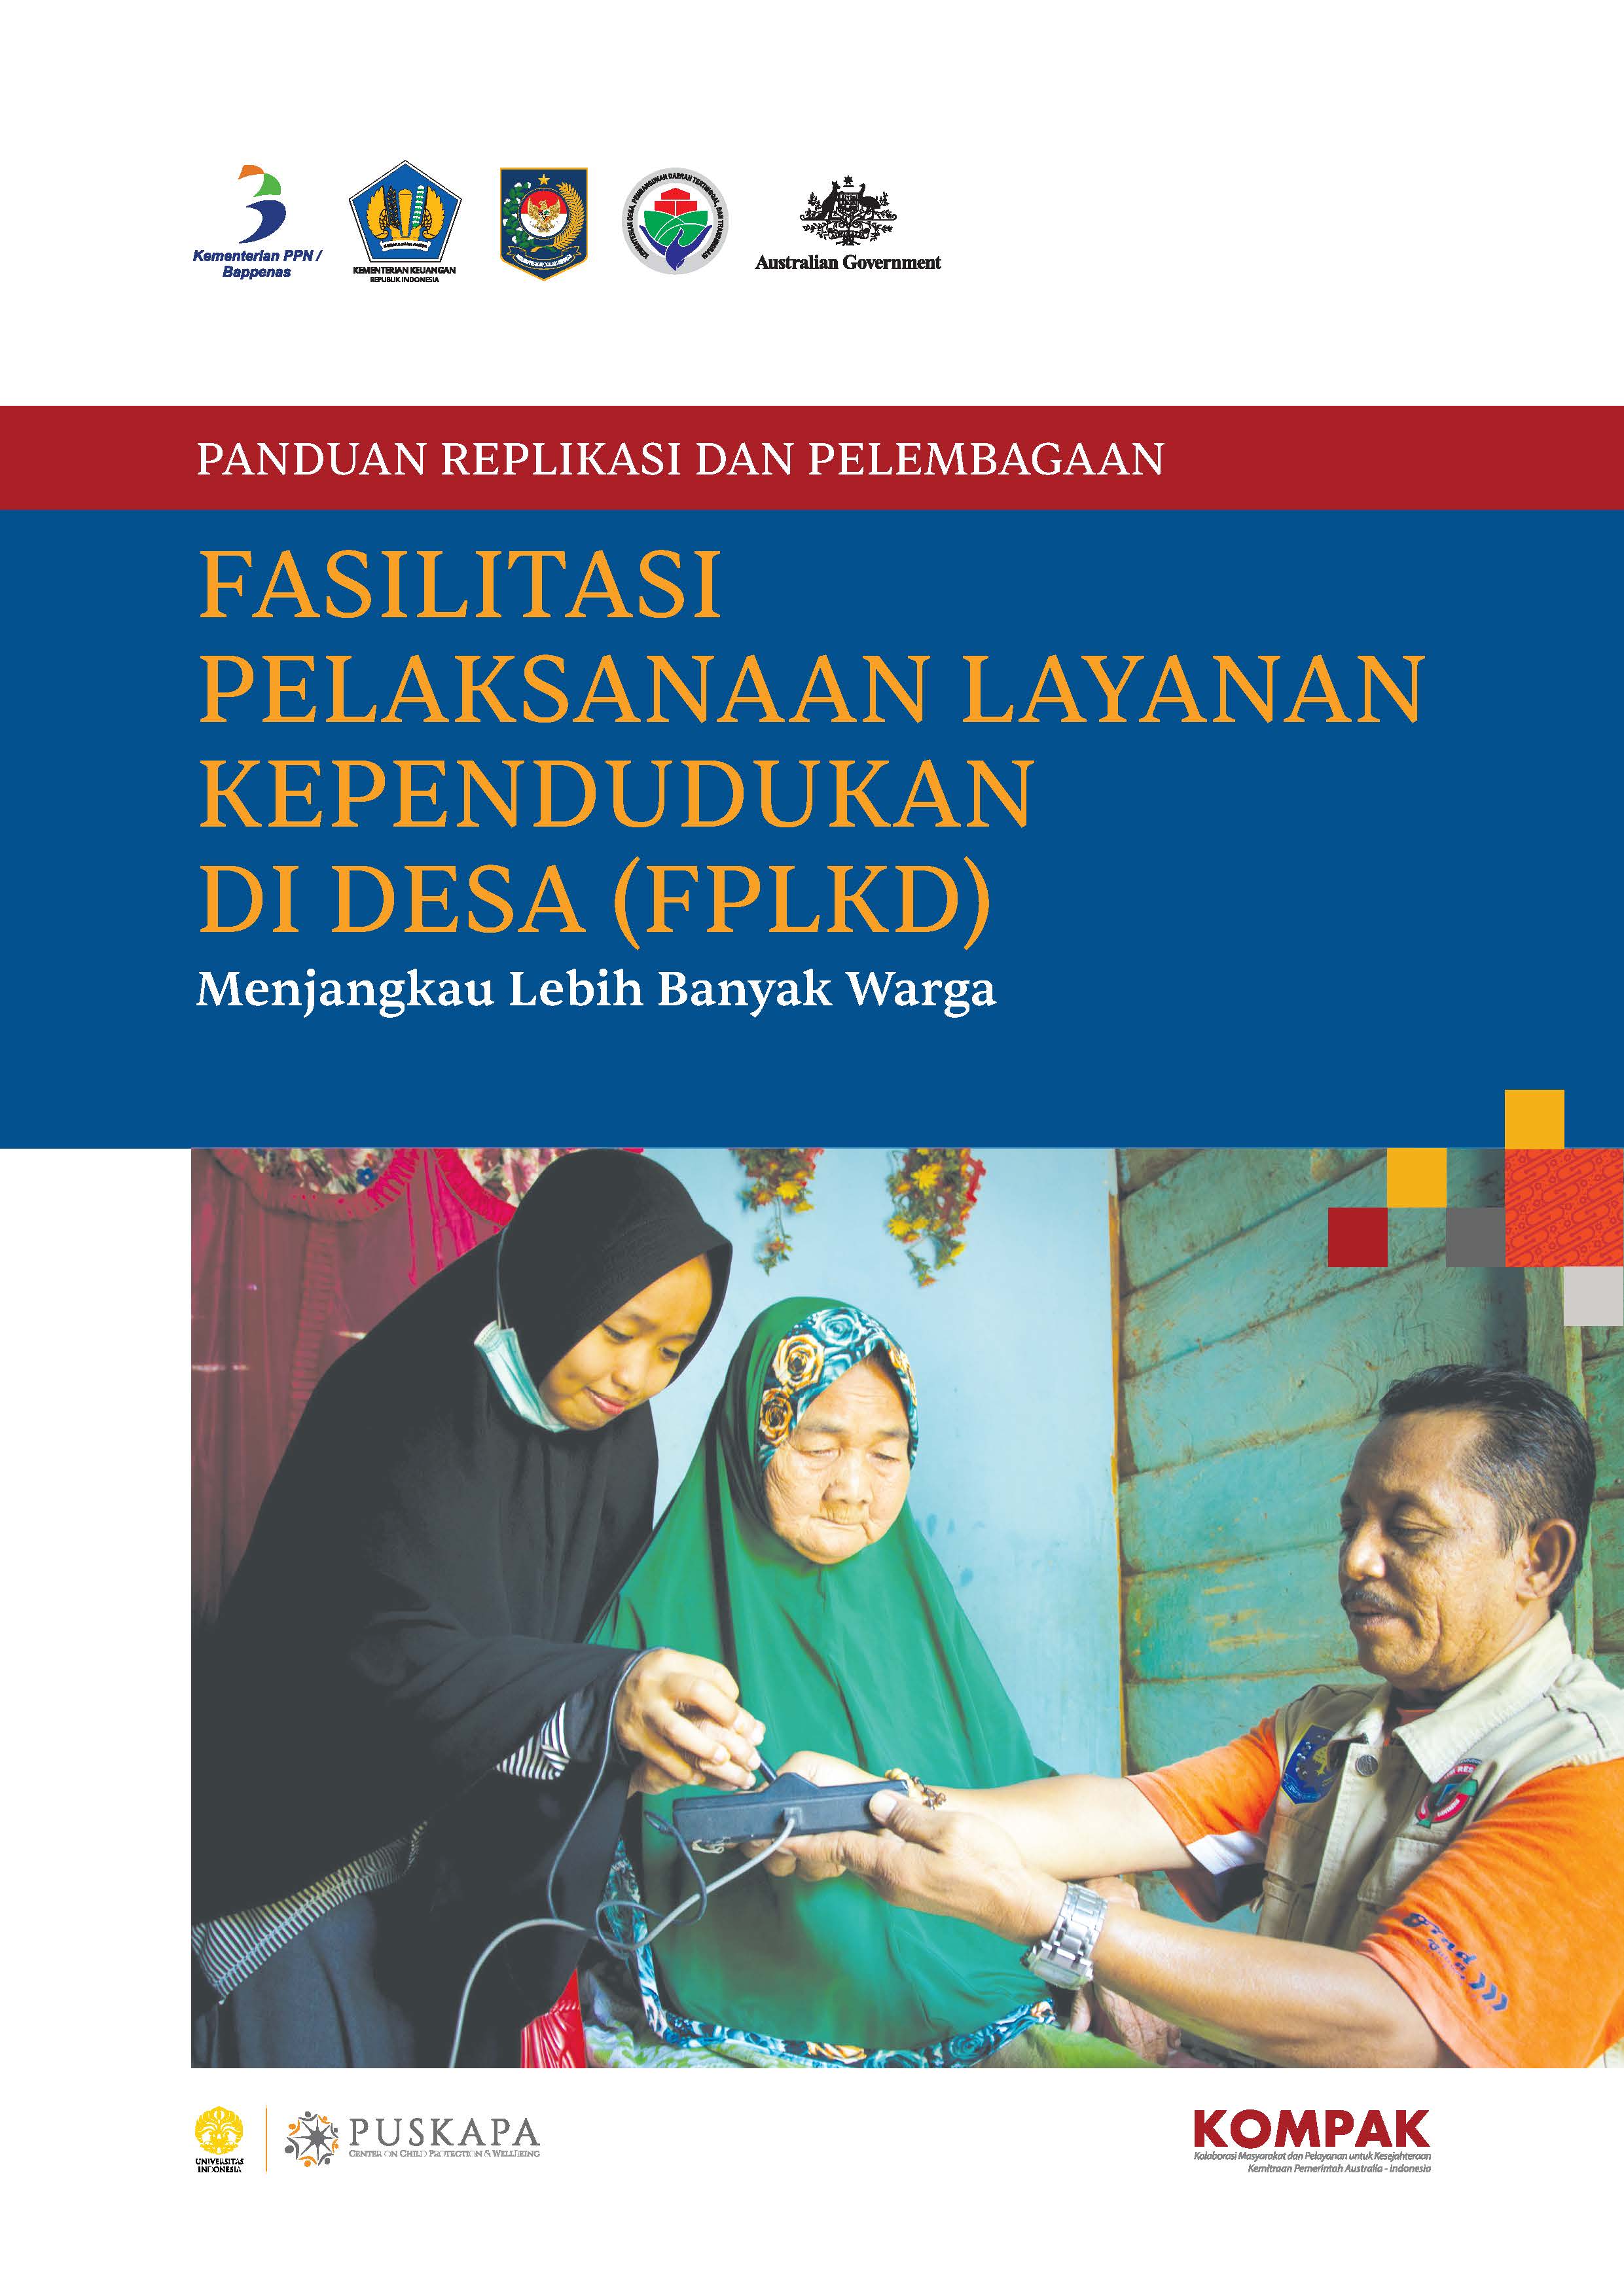 Panduan Replikasi dan Pelembagaan Fasilitasi Pelaksanaan Layanan Kependudukan di Desa (FPLKD)